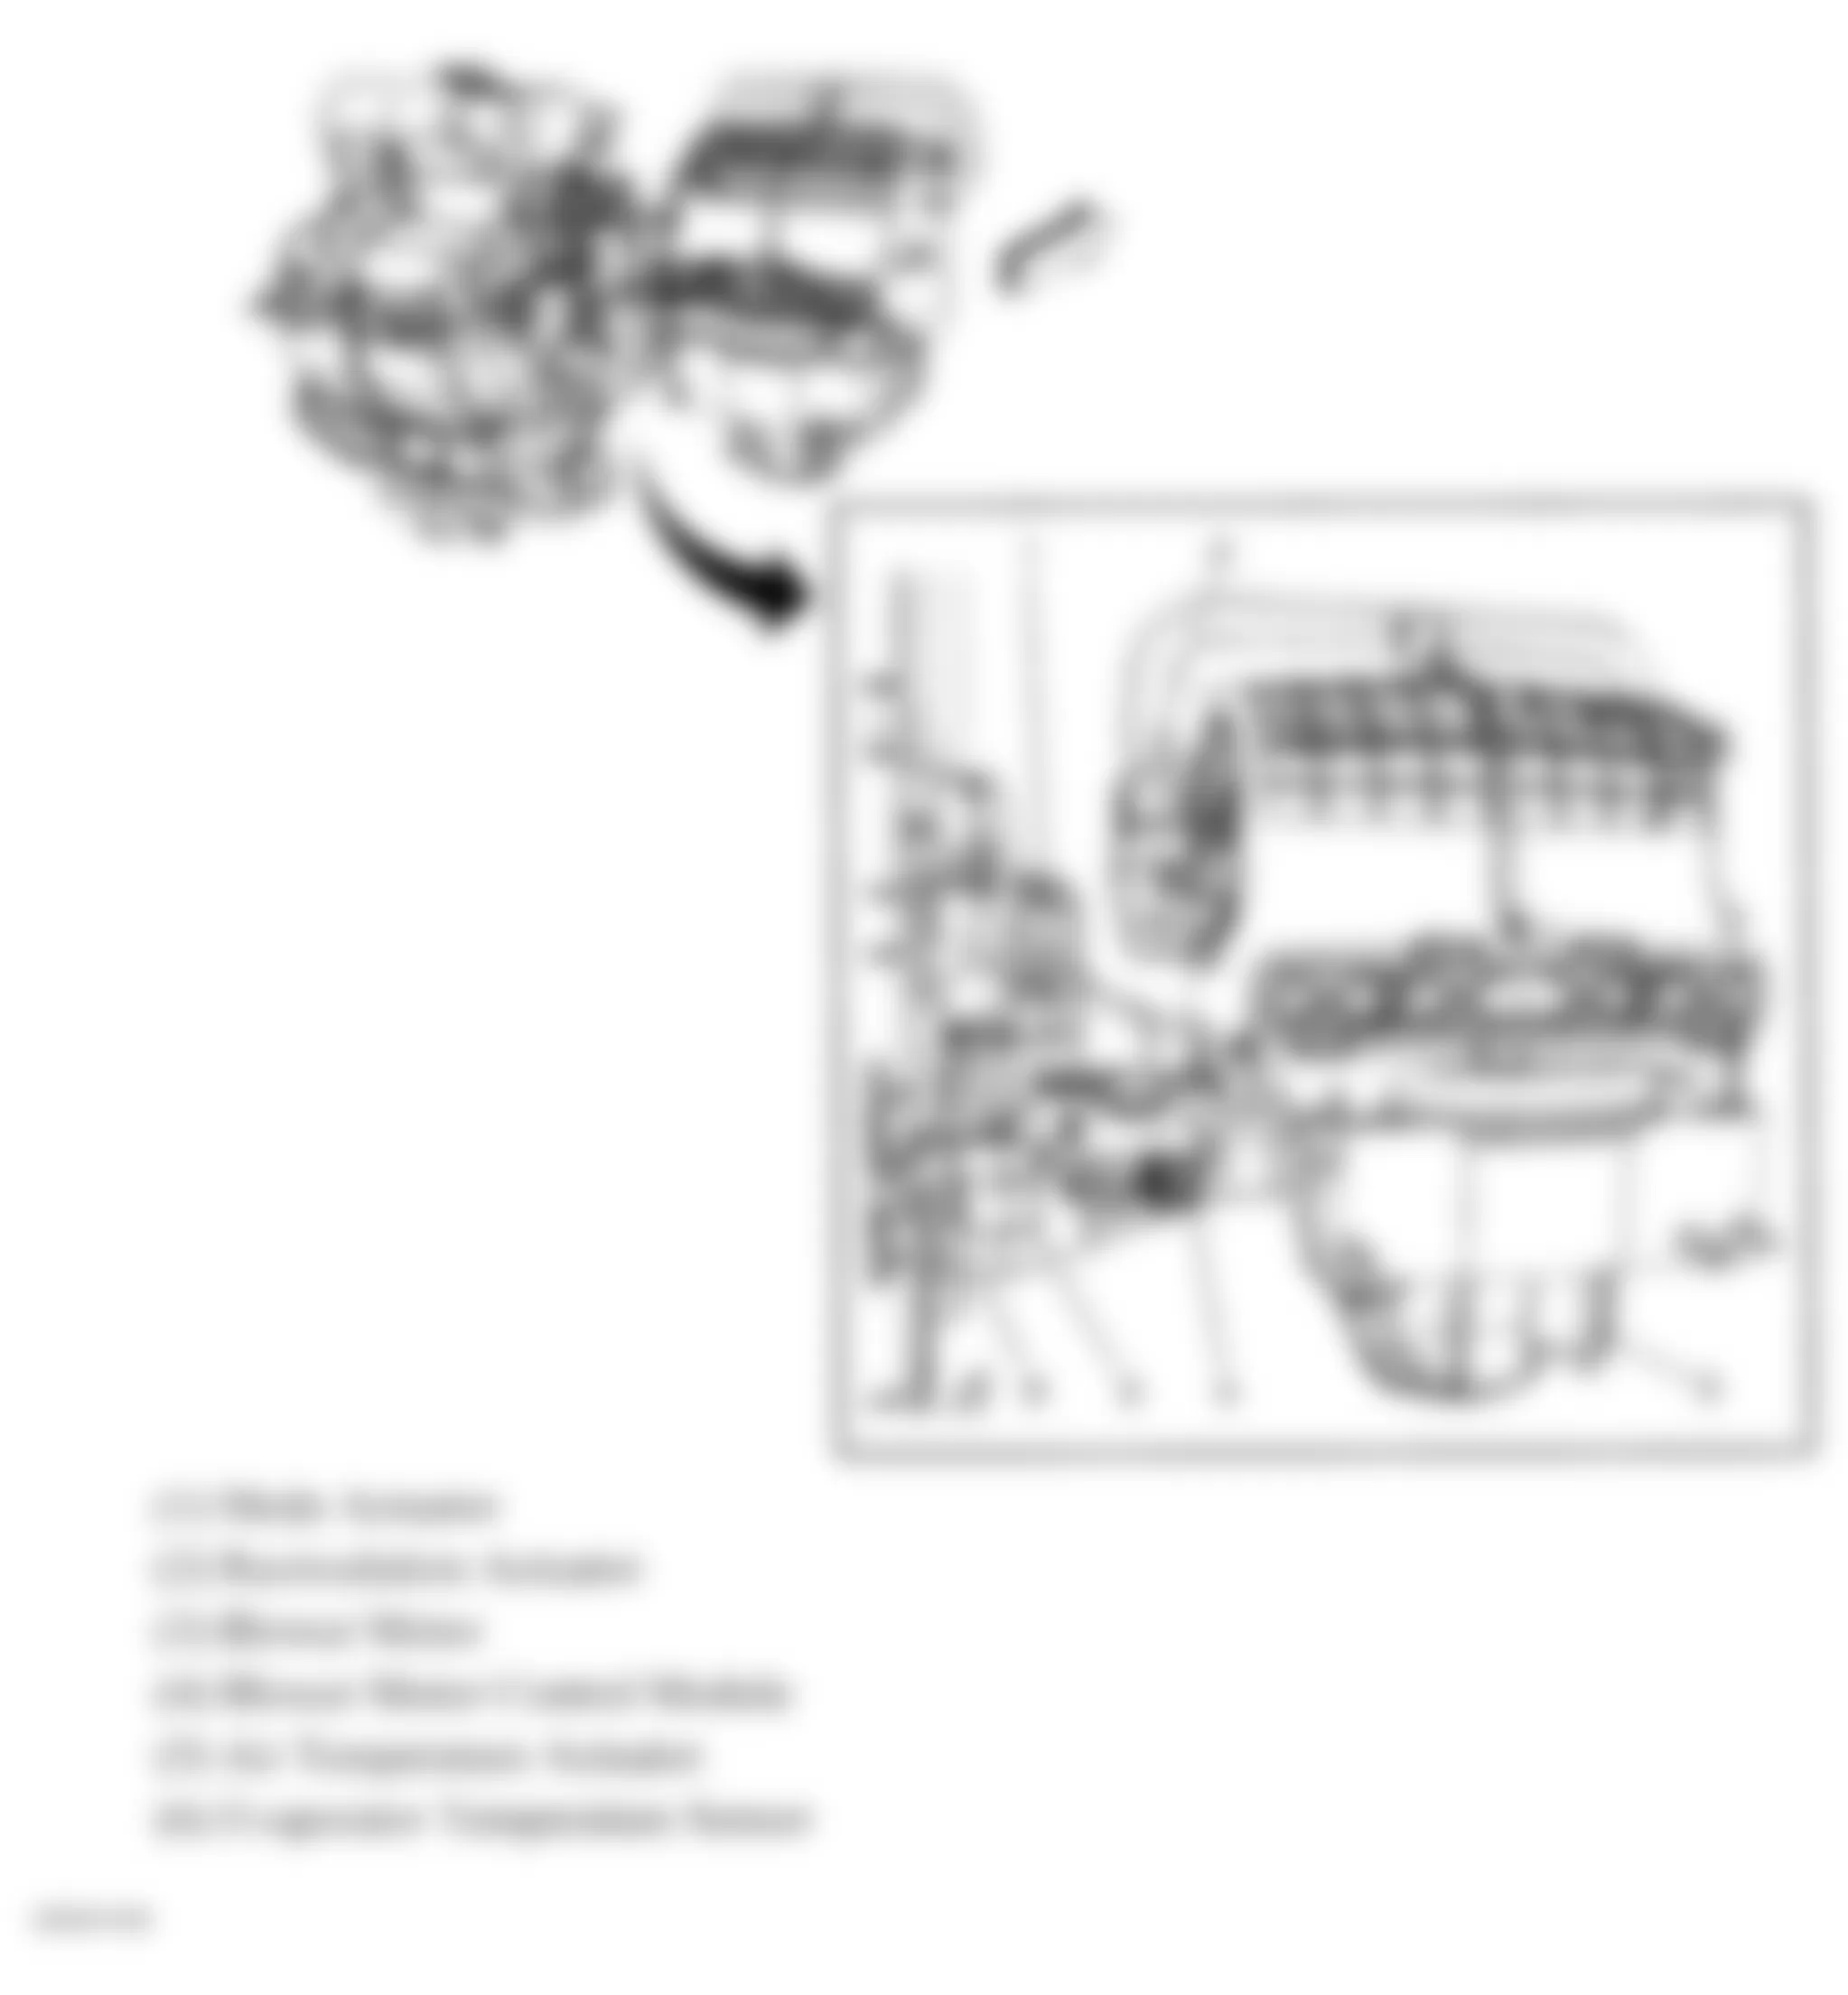 Buick Enclave CXL 2010 - Component Locations -  Front HVAC Module